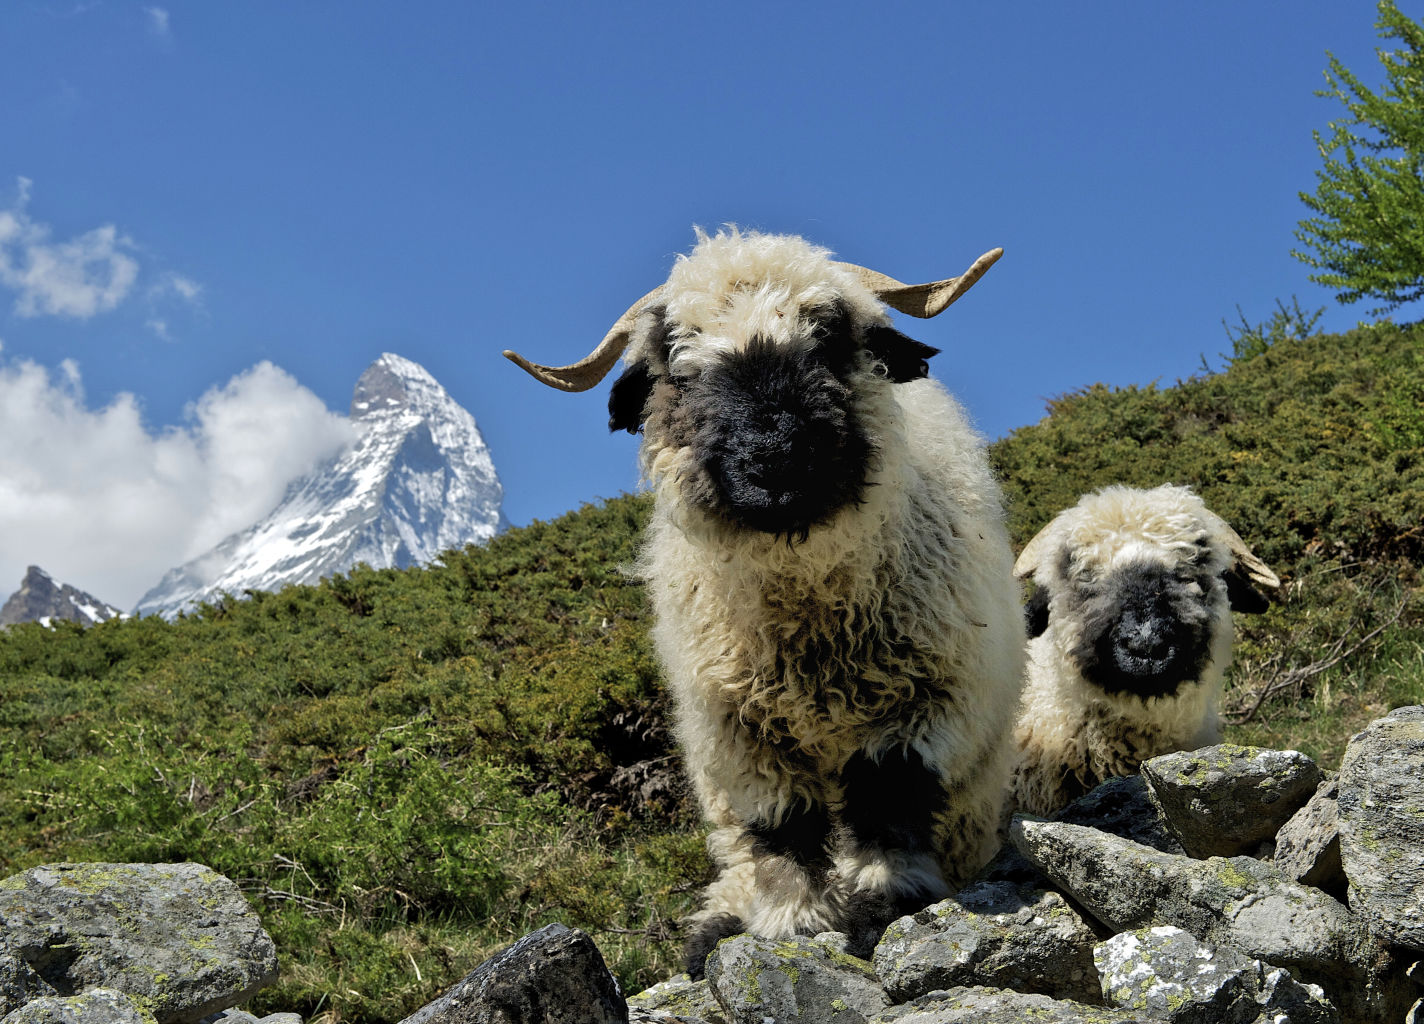 Valais Blacknose sheep in Zermatt, Valais, Switzerland